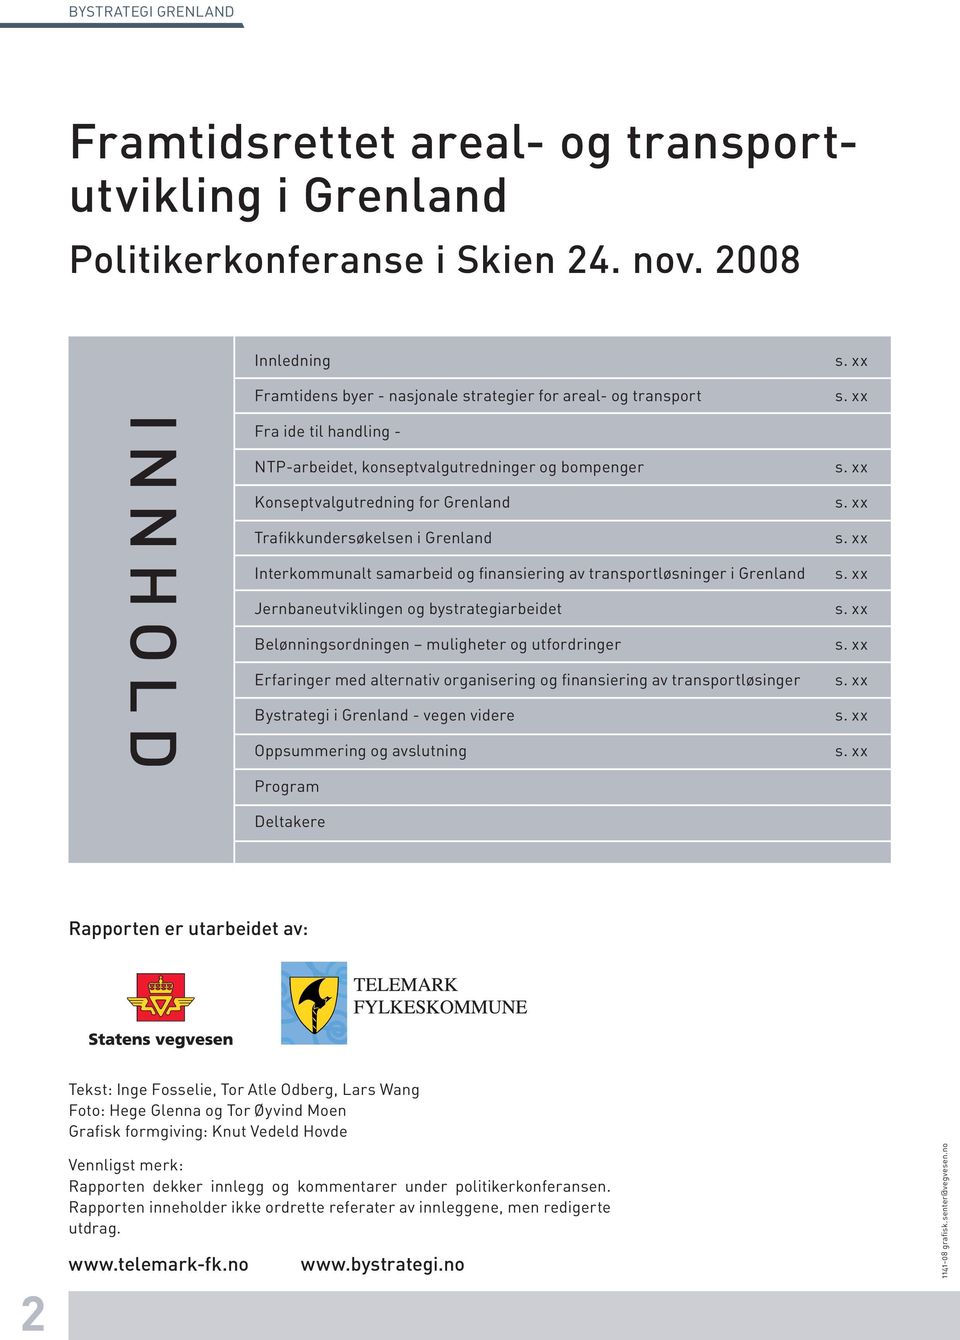 Trafikkundersøkelsen i Grenland Interkommunalt samarbeid og finansiering av transportløsninger i Grenland Jernbaneutviklingen og bystrategiarbeidet Belønningsordningen muligheter og utfordringer